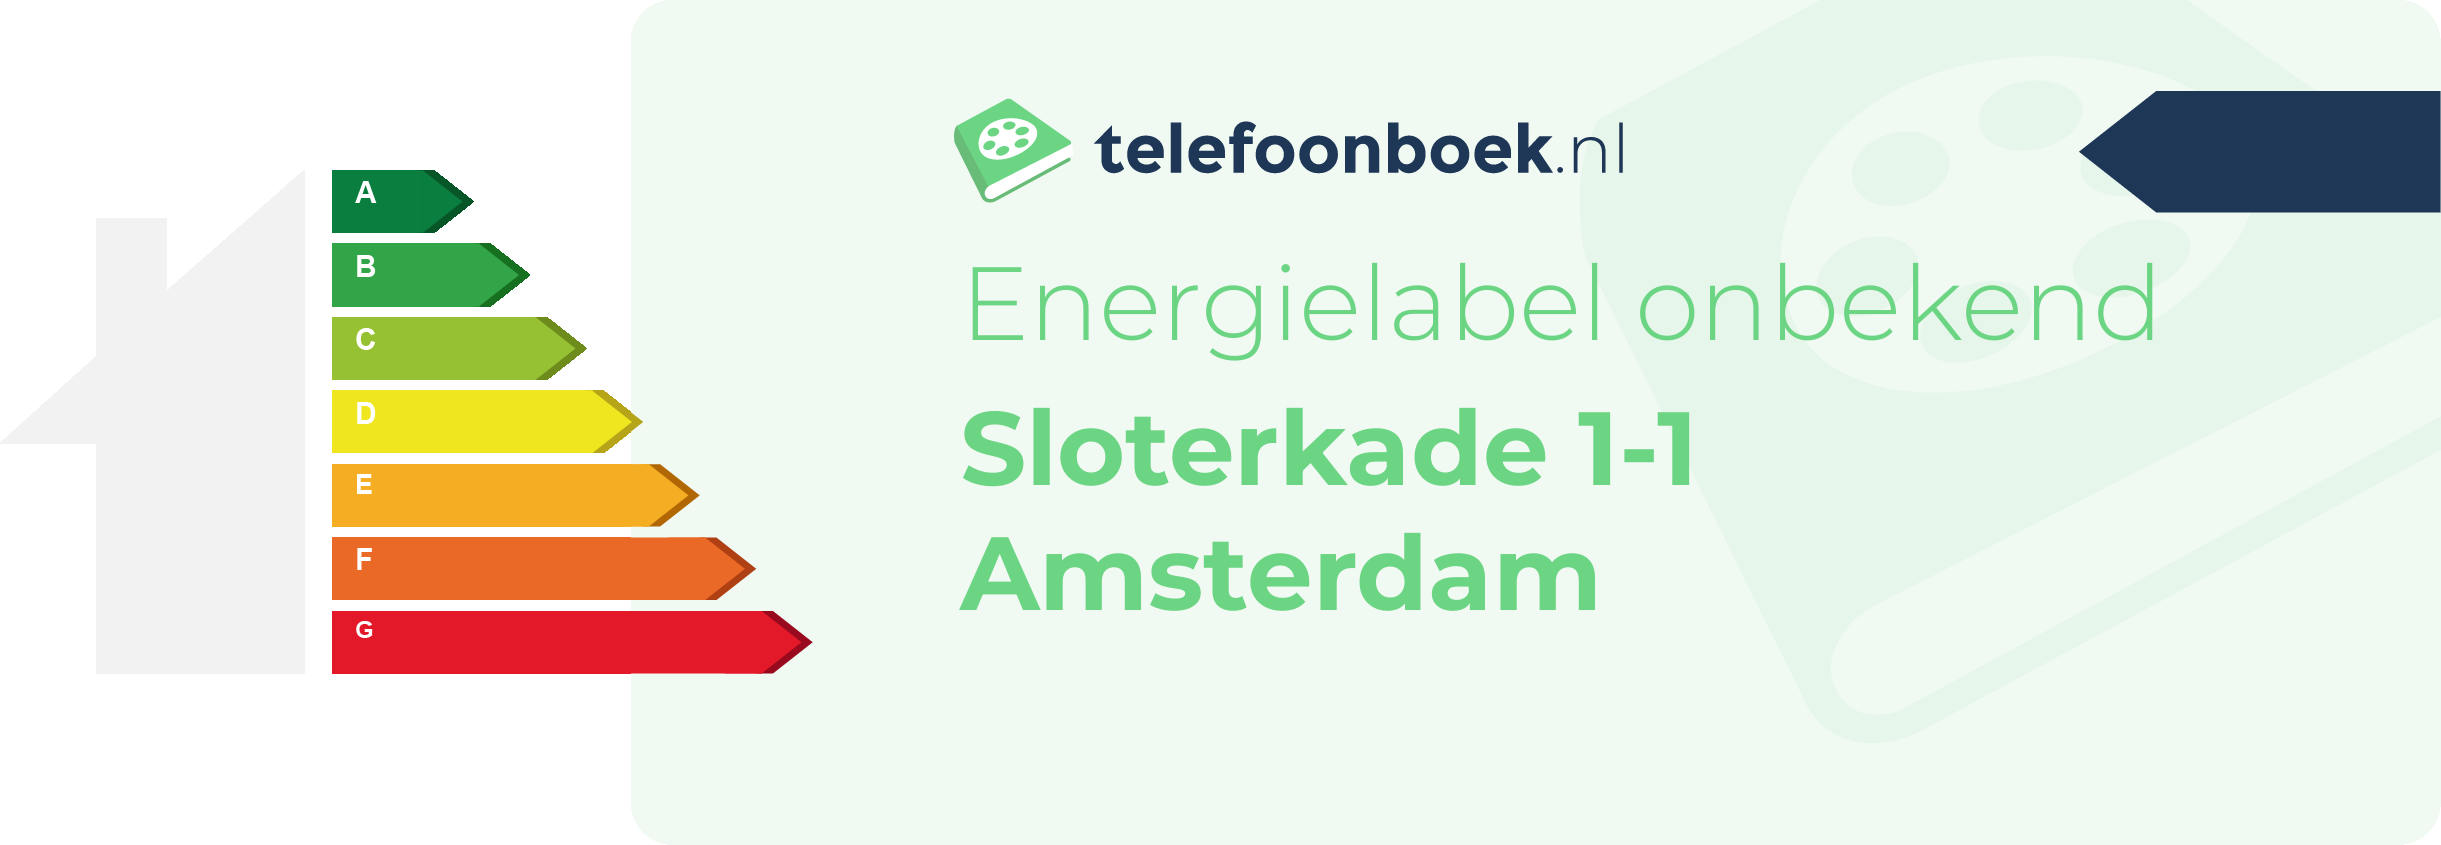 Energielabel Sloterkade 1-1 Amsterdam